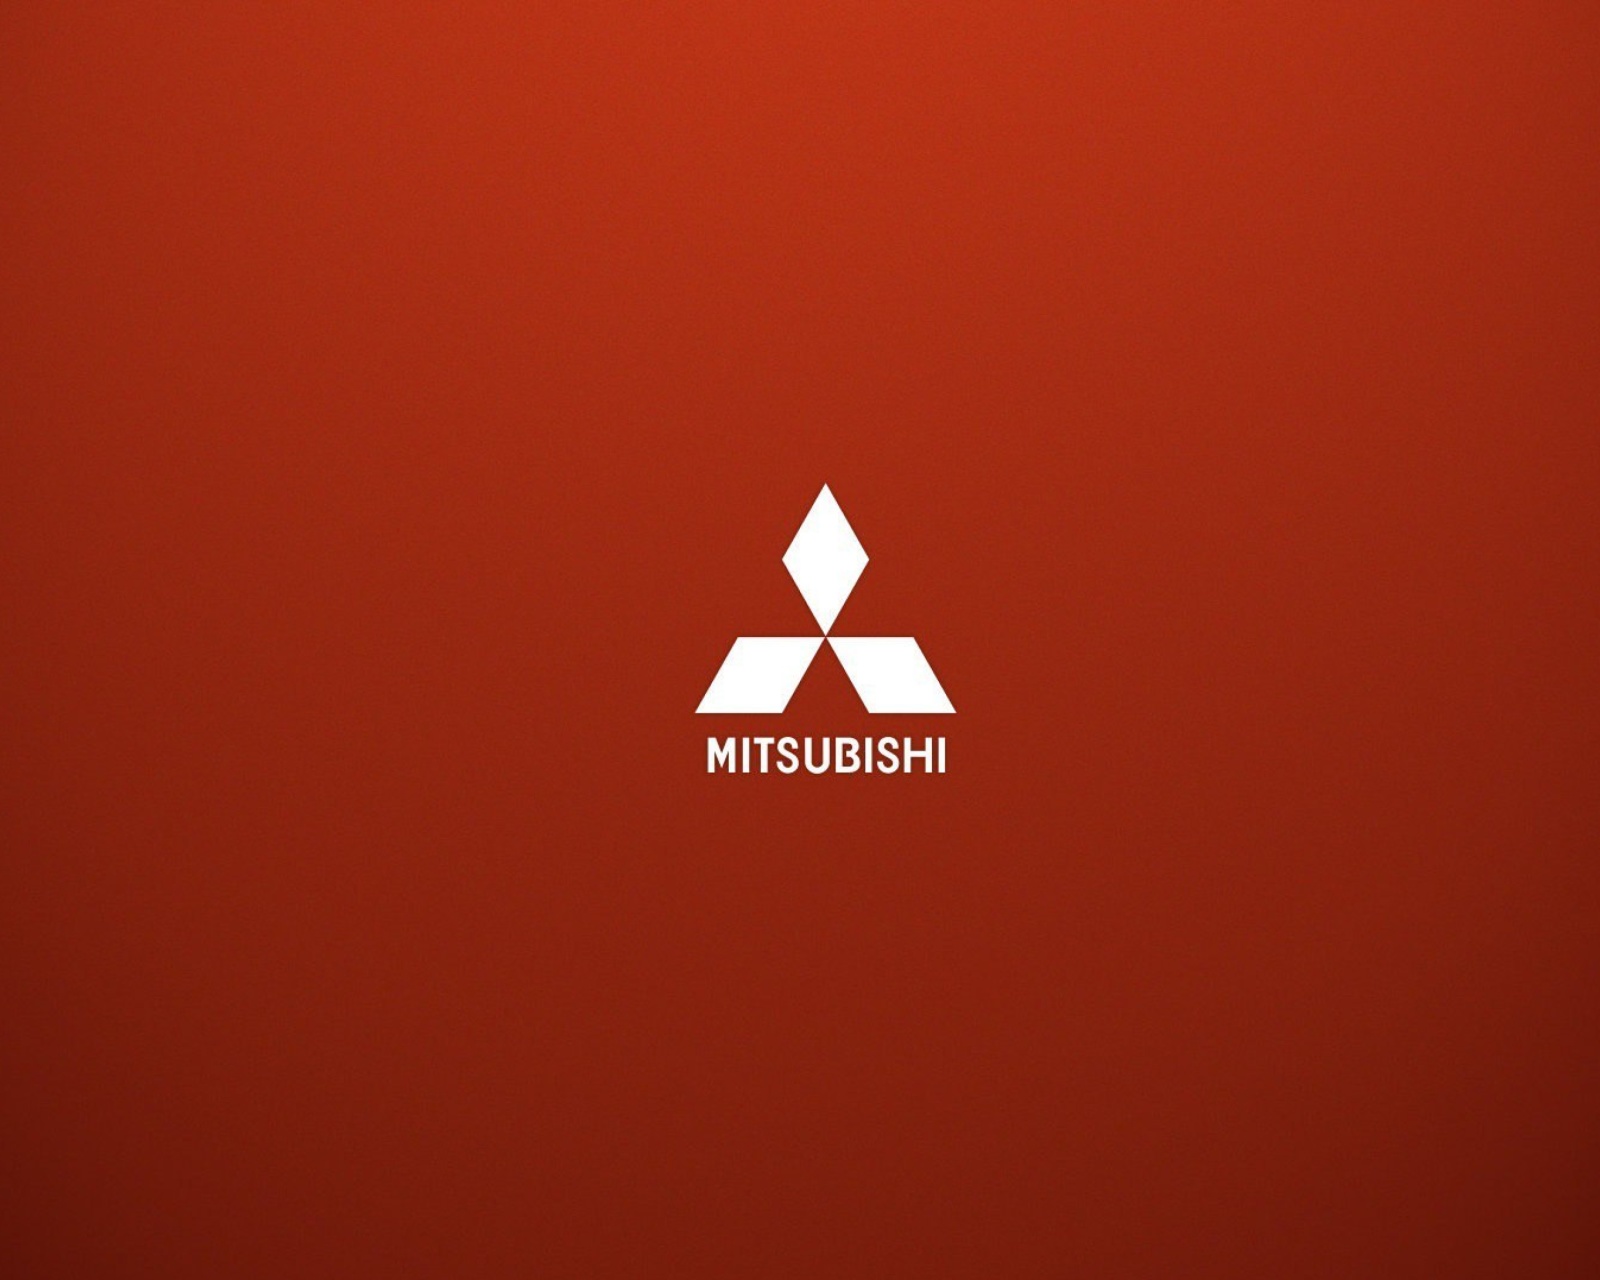 Das Mitsubishi logo Wallpaper 1600x1280